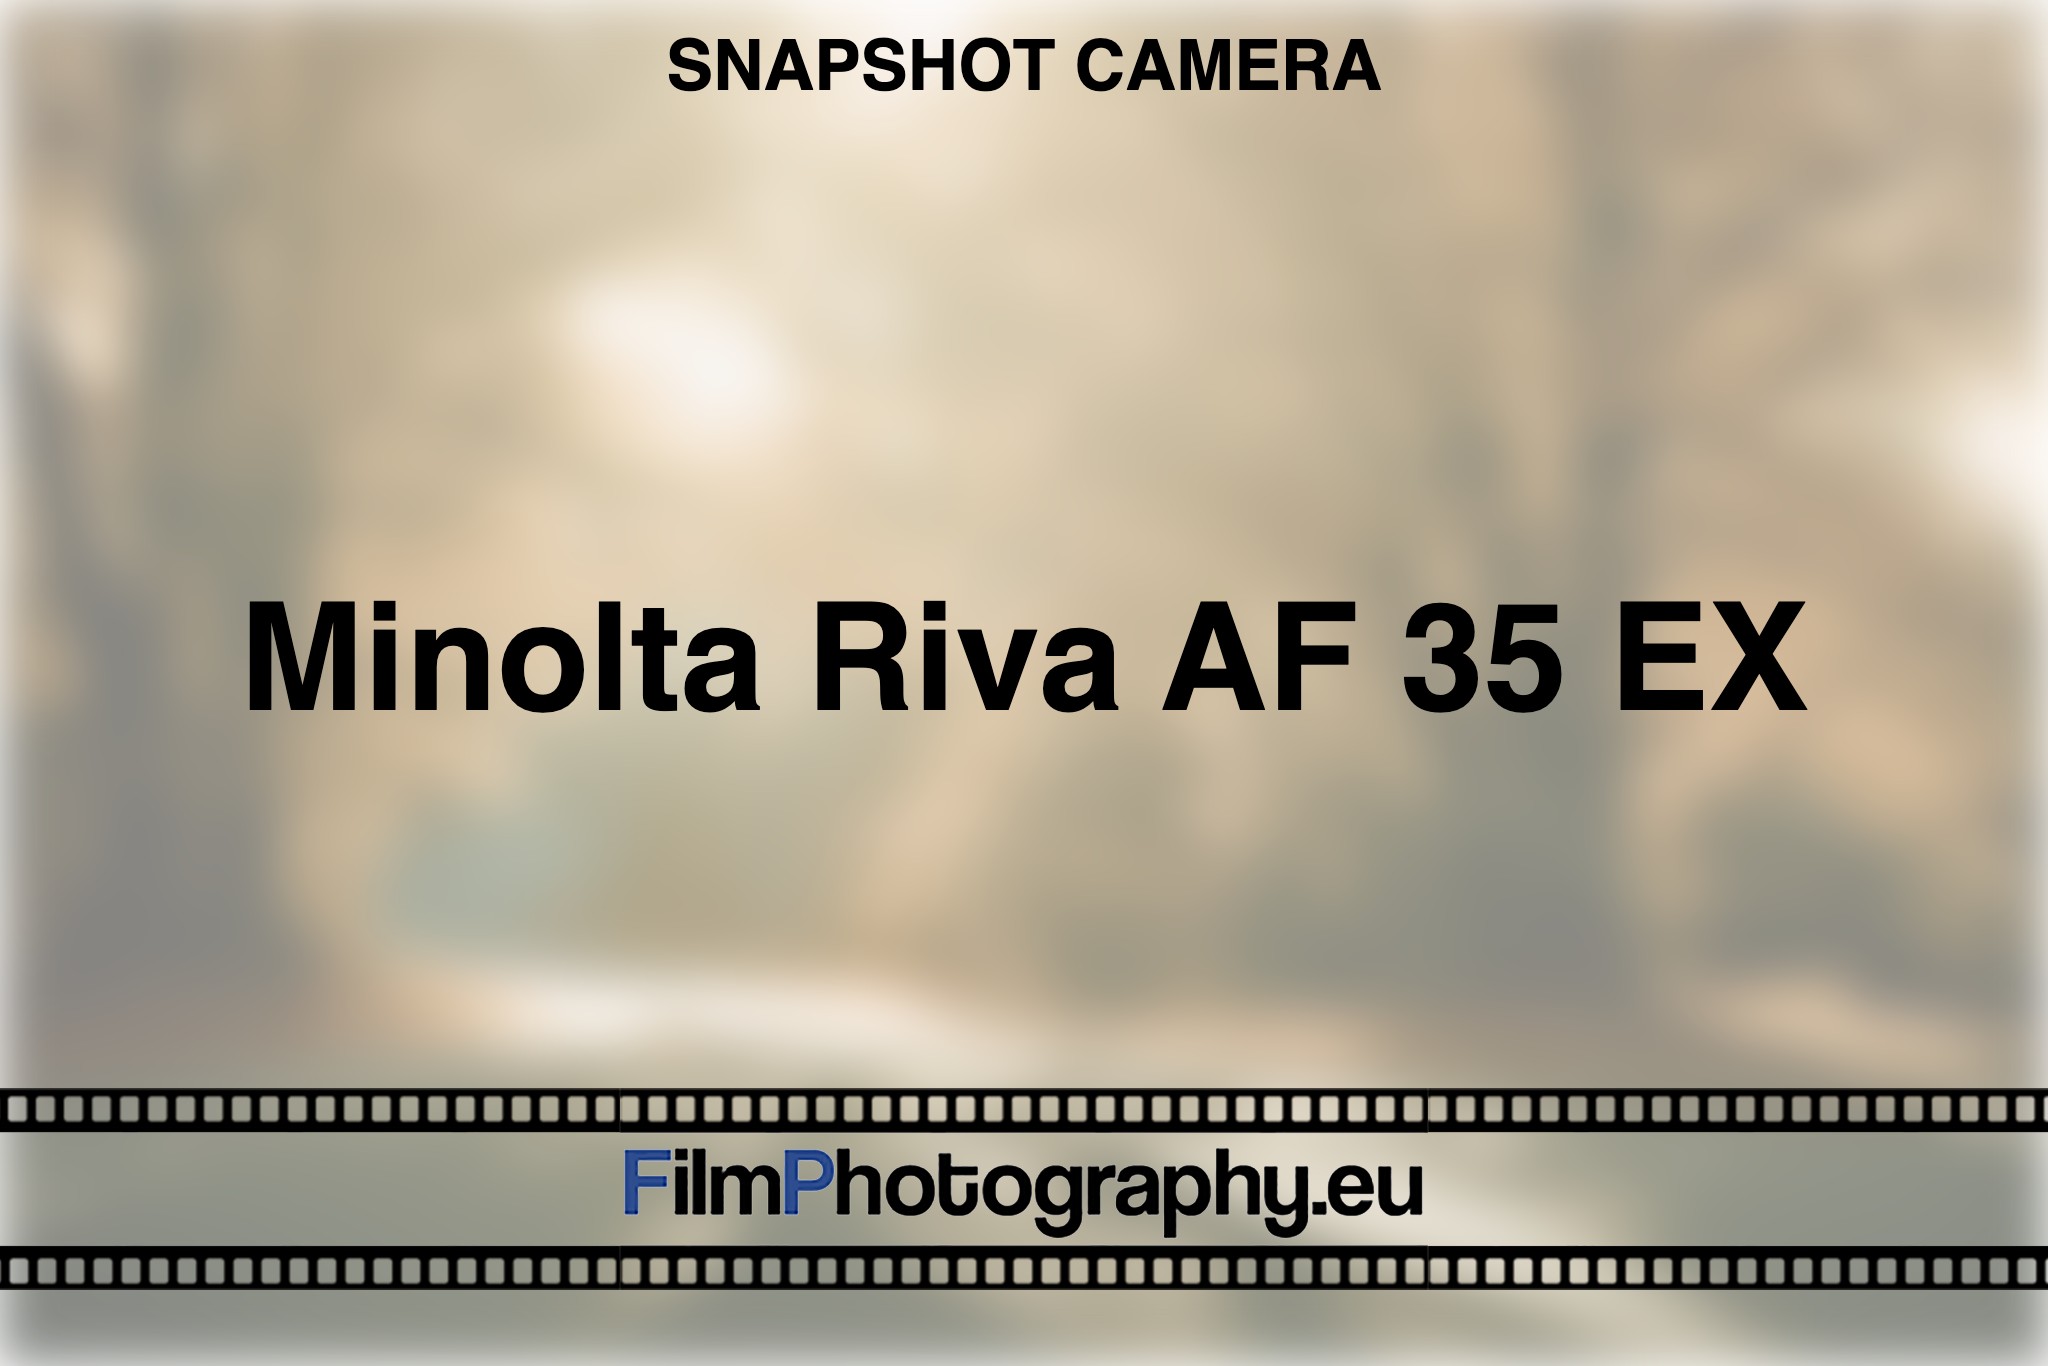 minolta-riva-af-35-ex-snapshot-camera-bnv